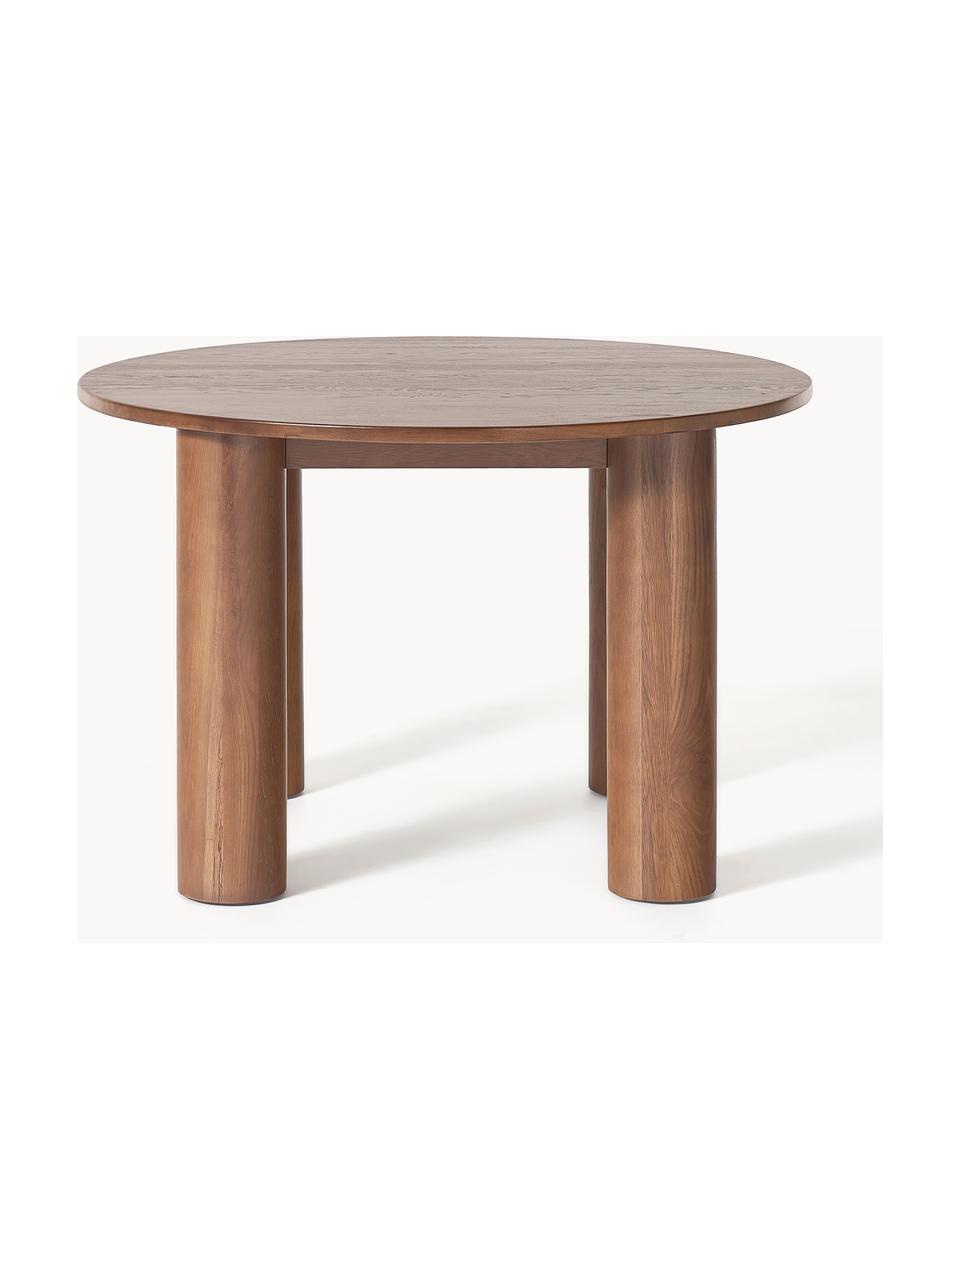 Kulatý jídelní stůl z dubového dřeva Ohana, Ø 120 cm, Masivní dubové dřevo, olejované

Tento produkt je vyroben z udržitelných zdrojů dřeva s certifikací FSC®., Dubové dřevo, hnědě olejované, Ø 120 cm